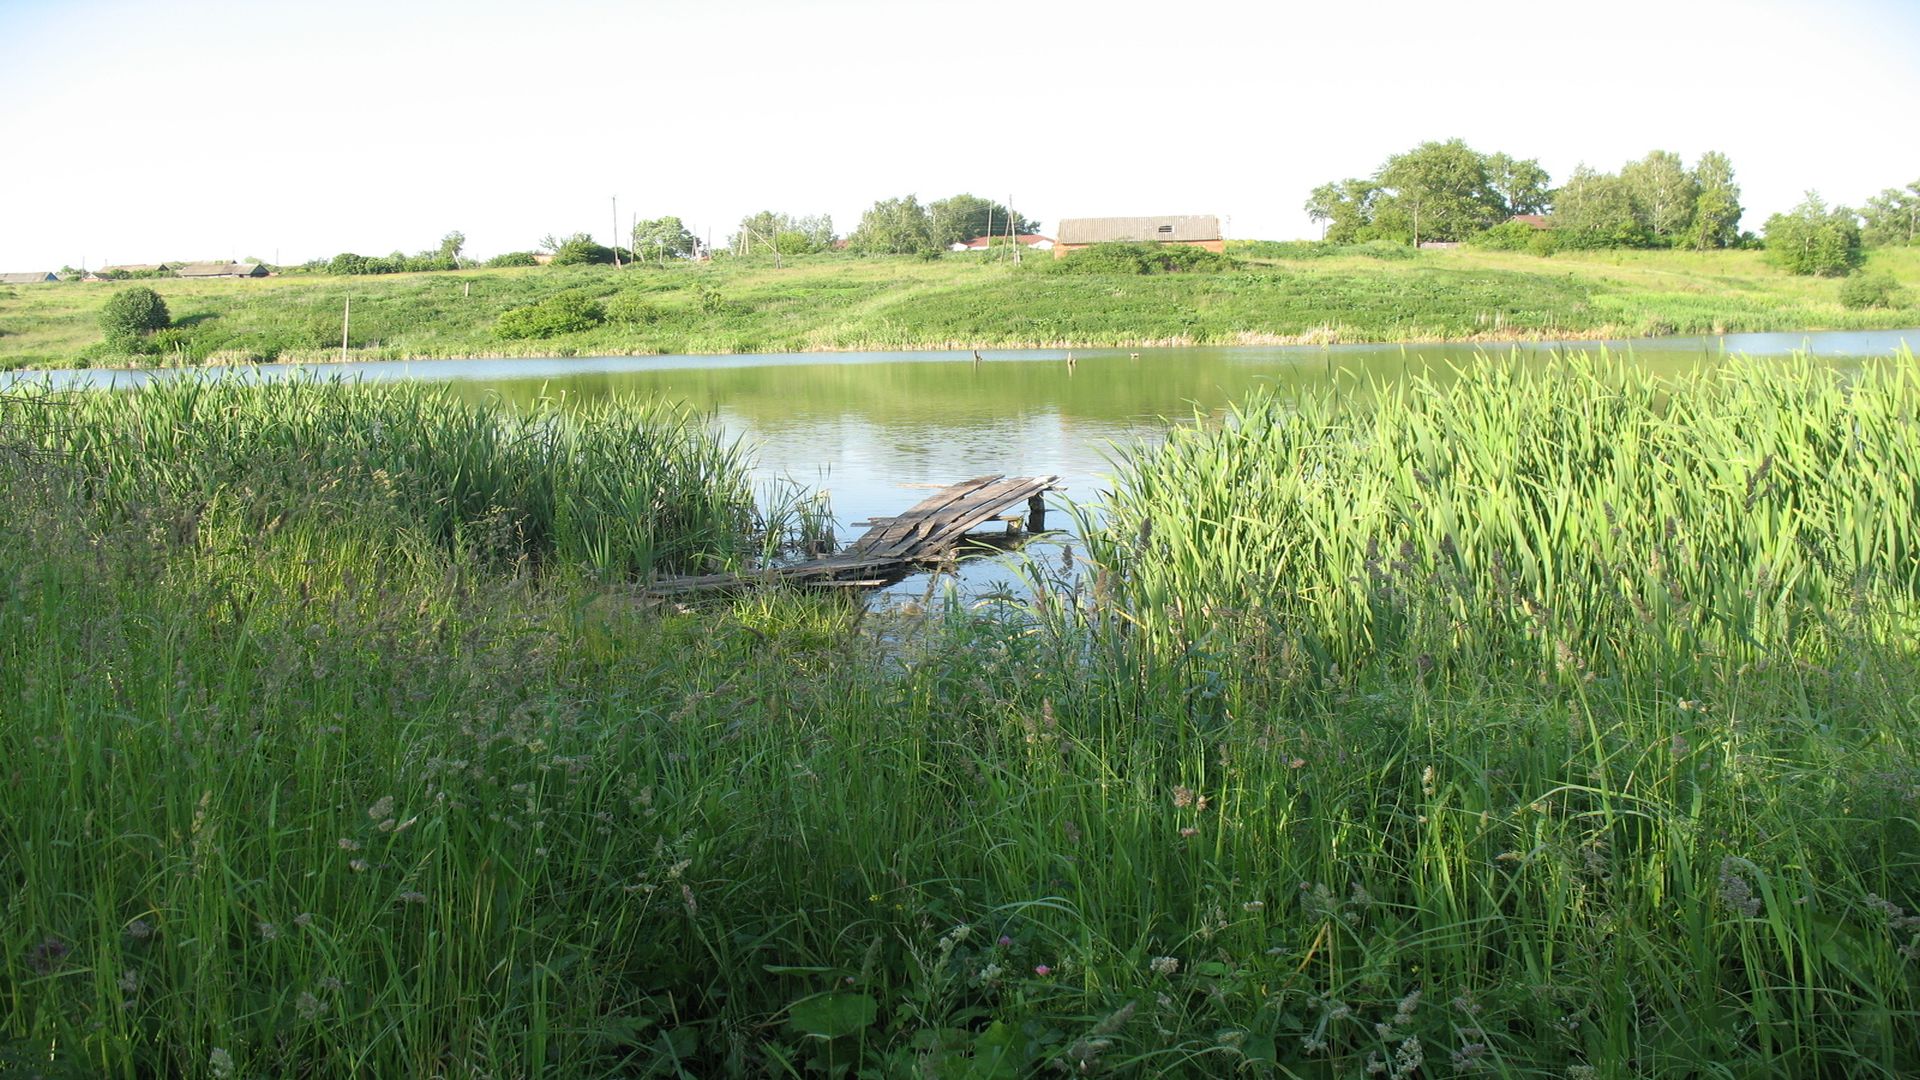 عکس واقعی دریاچه کوچک خوش آب و هوا با حاشیه گیاهان سبز مناسب پروفایل